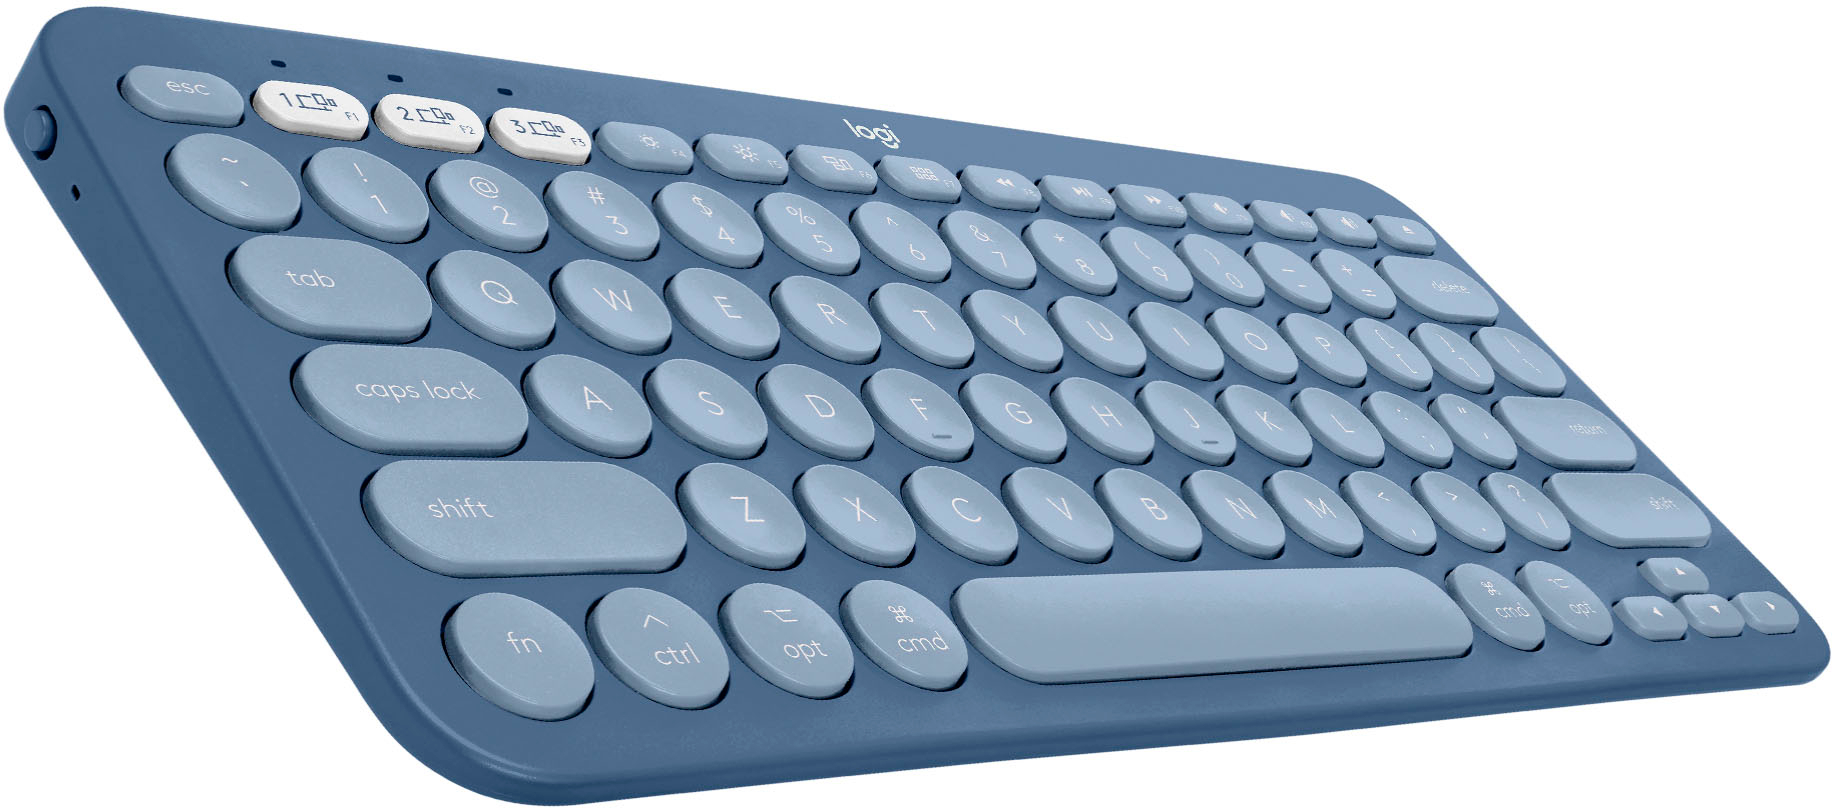 Best Buy: Logitech K380 TKL Bluetooth Scissor Keyboard for Mac